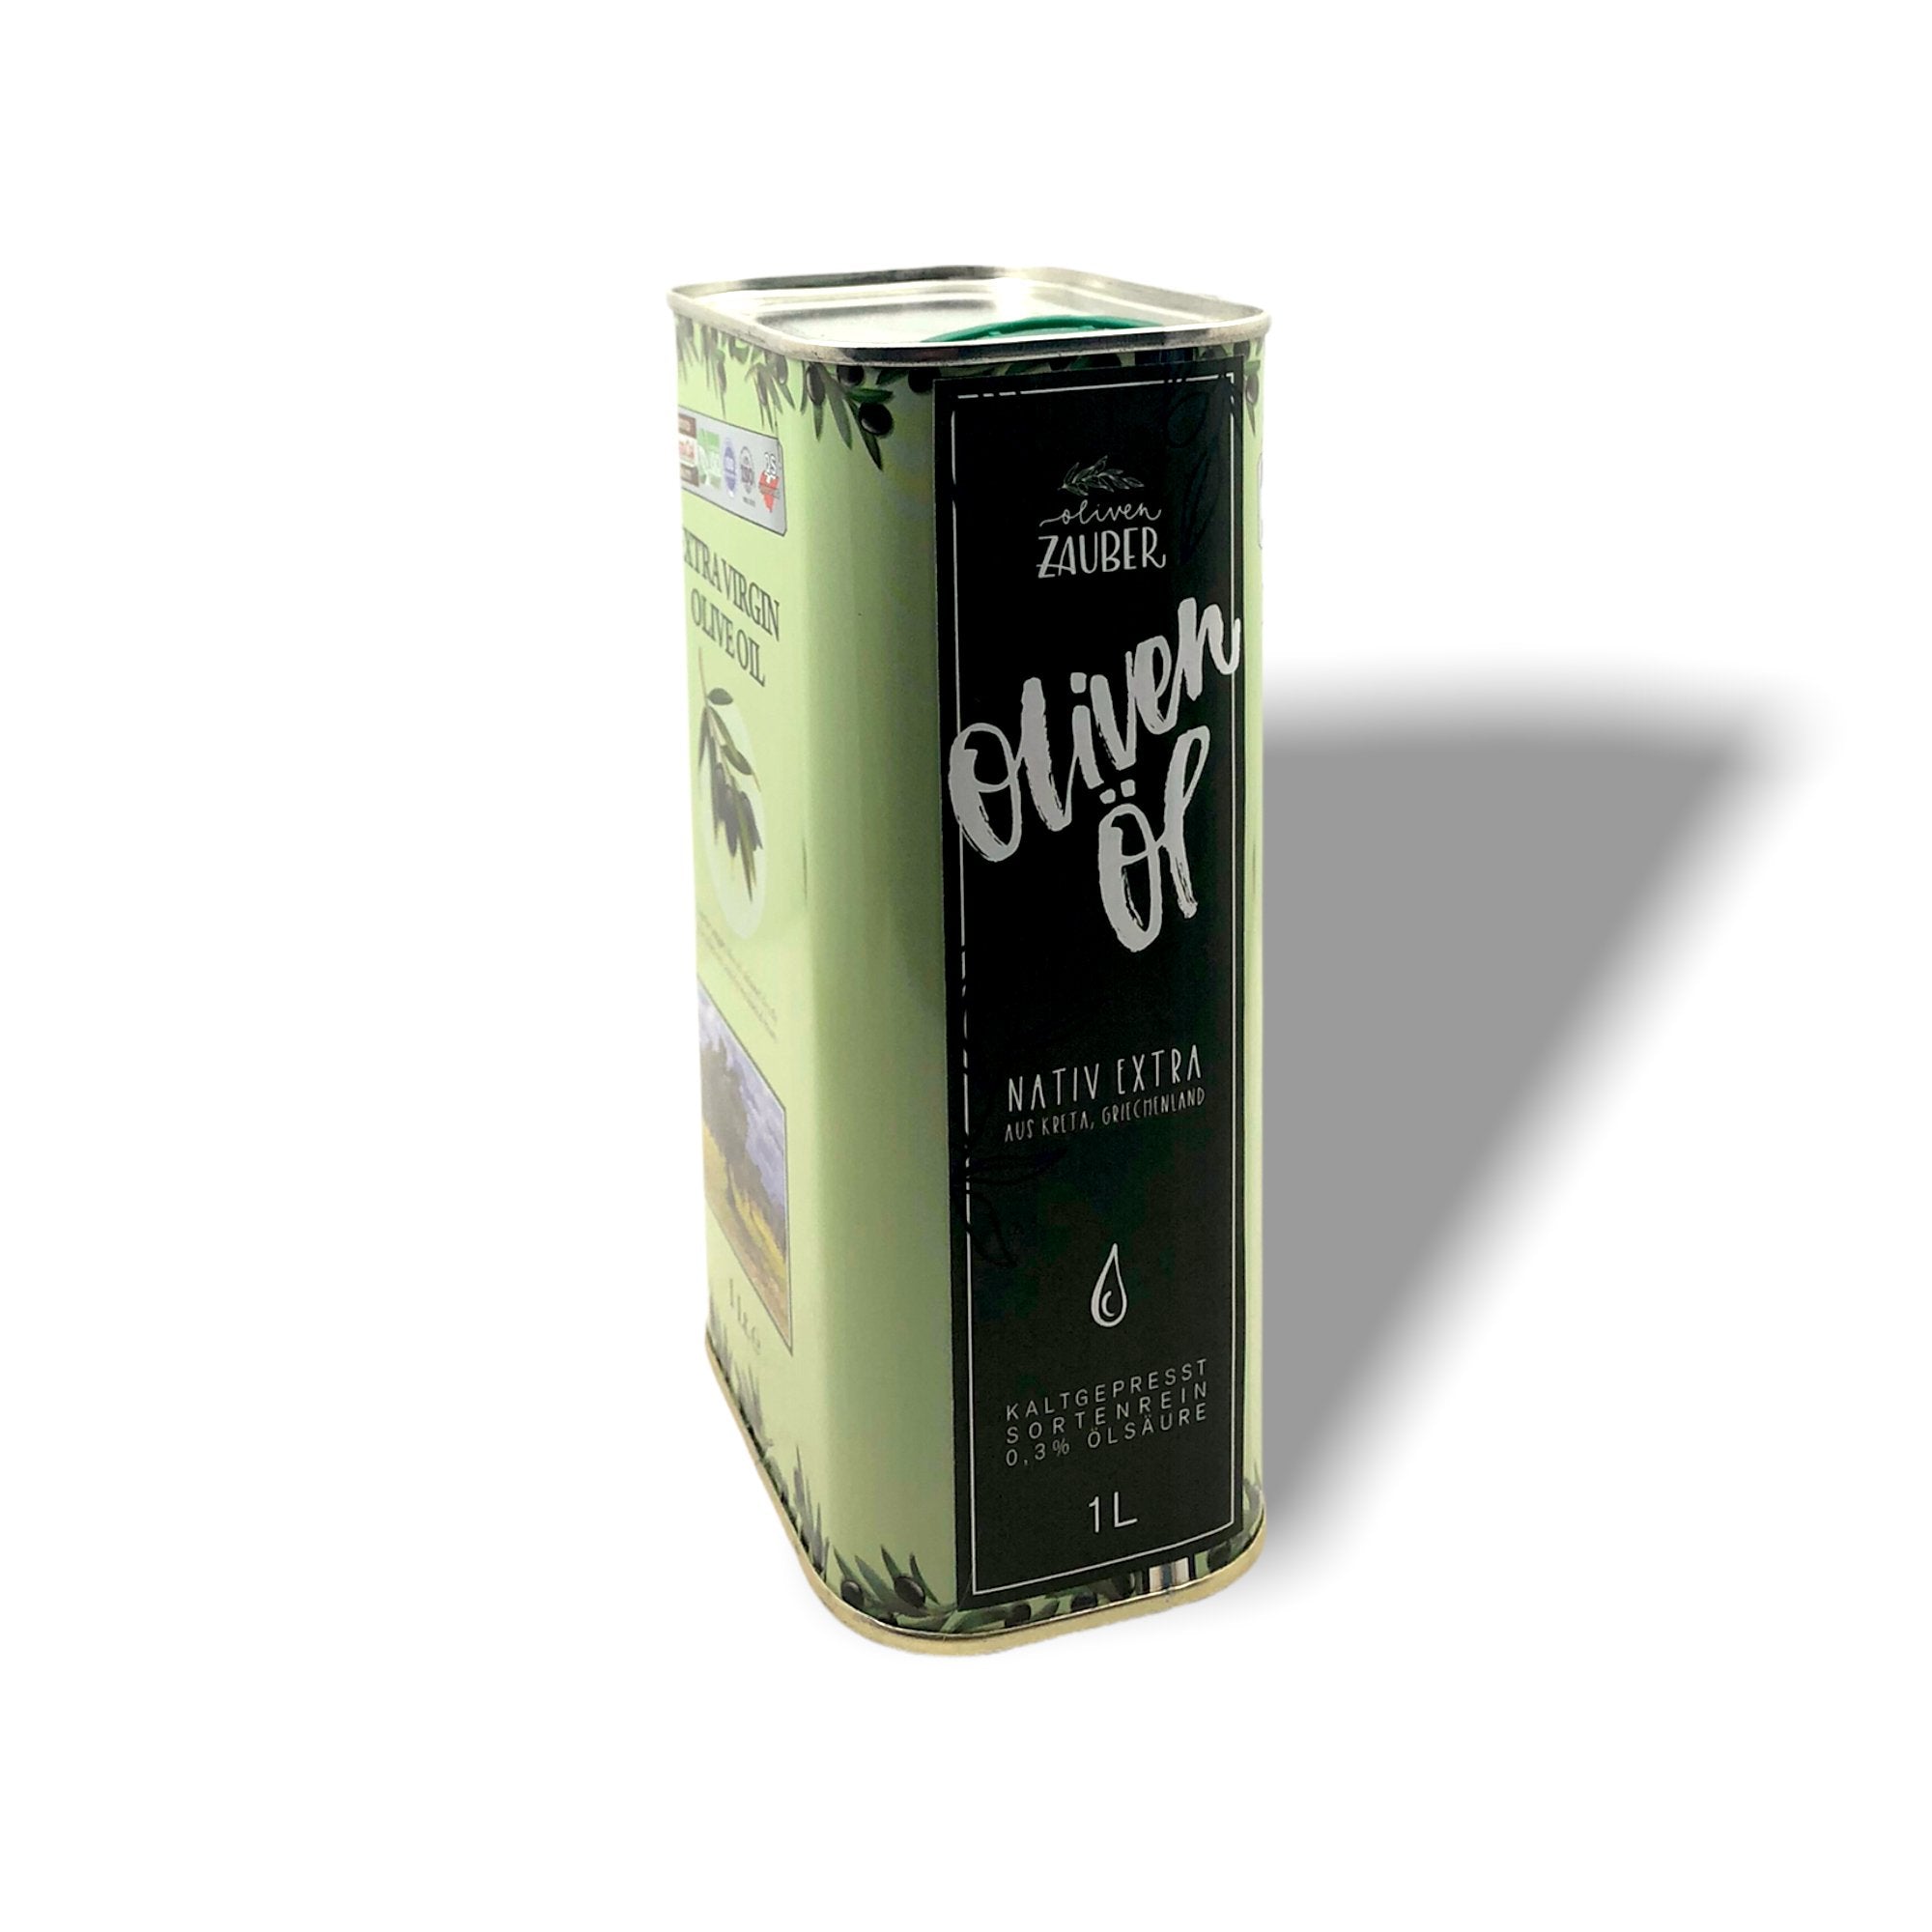 Black Friday Paket - small - 20% Rabatt - OlivenZauber - Olivenöl neu erleben